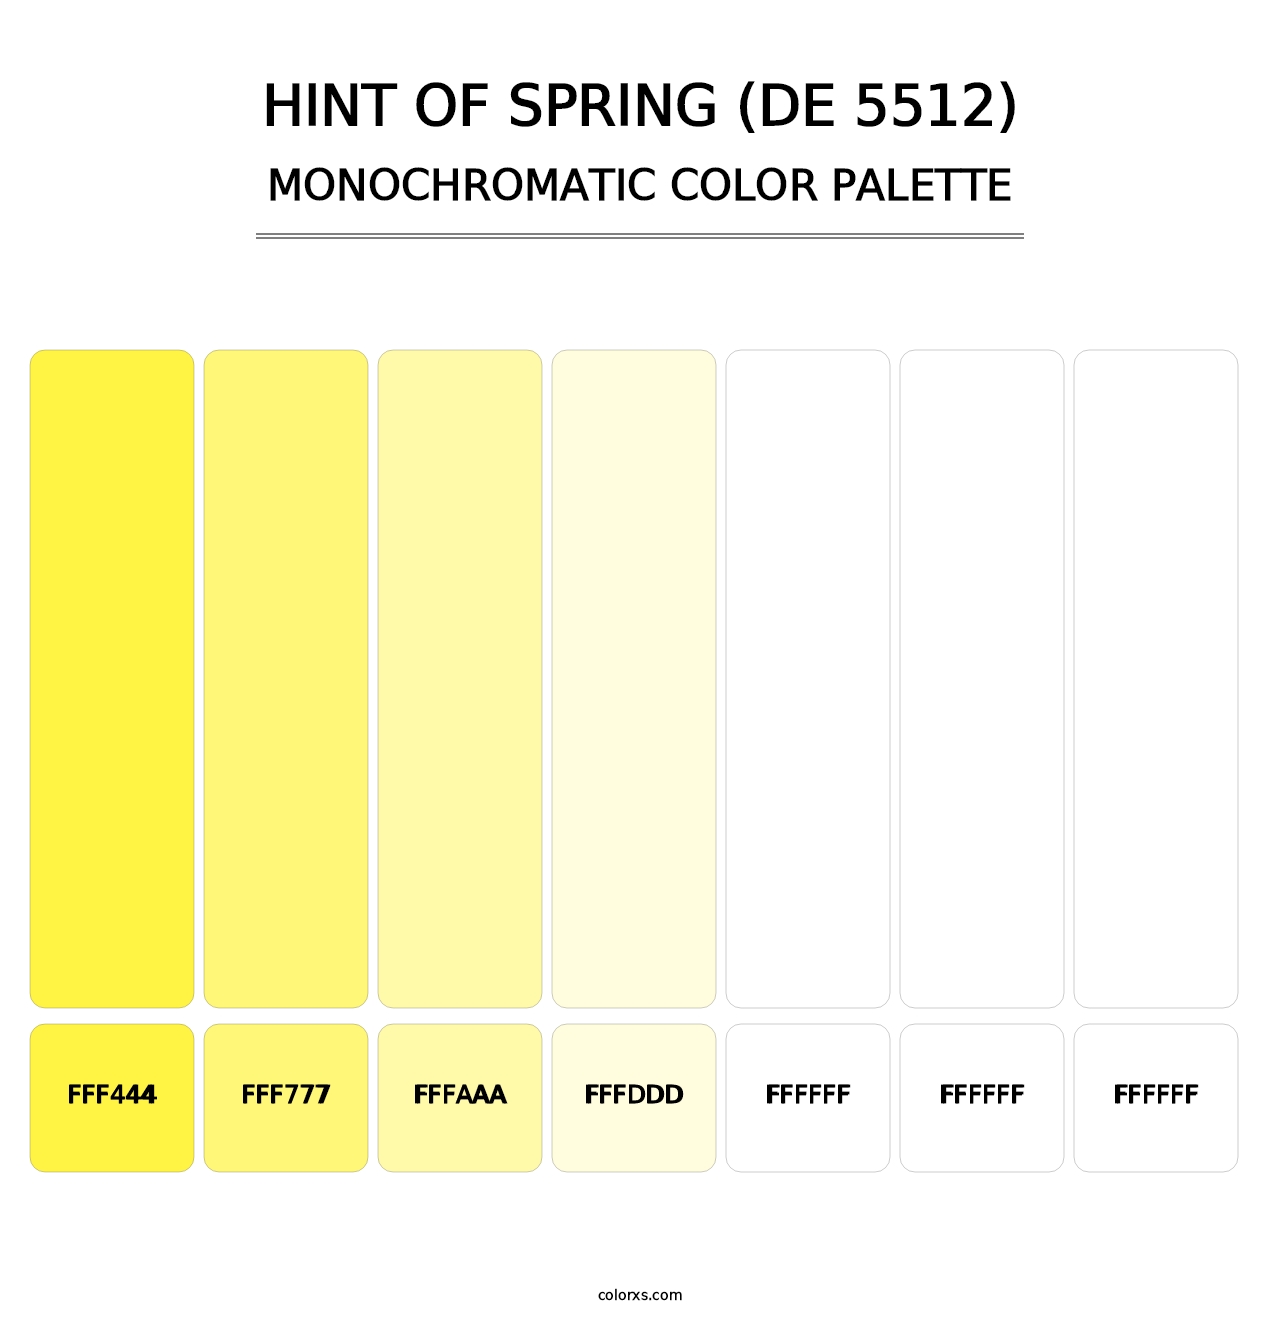 Hint of Spring (DE 5512) - Monochromatic Color Palette